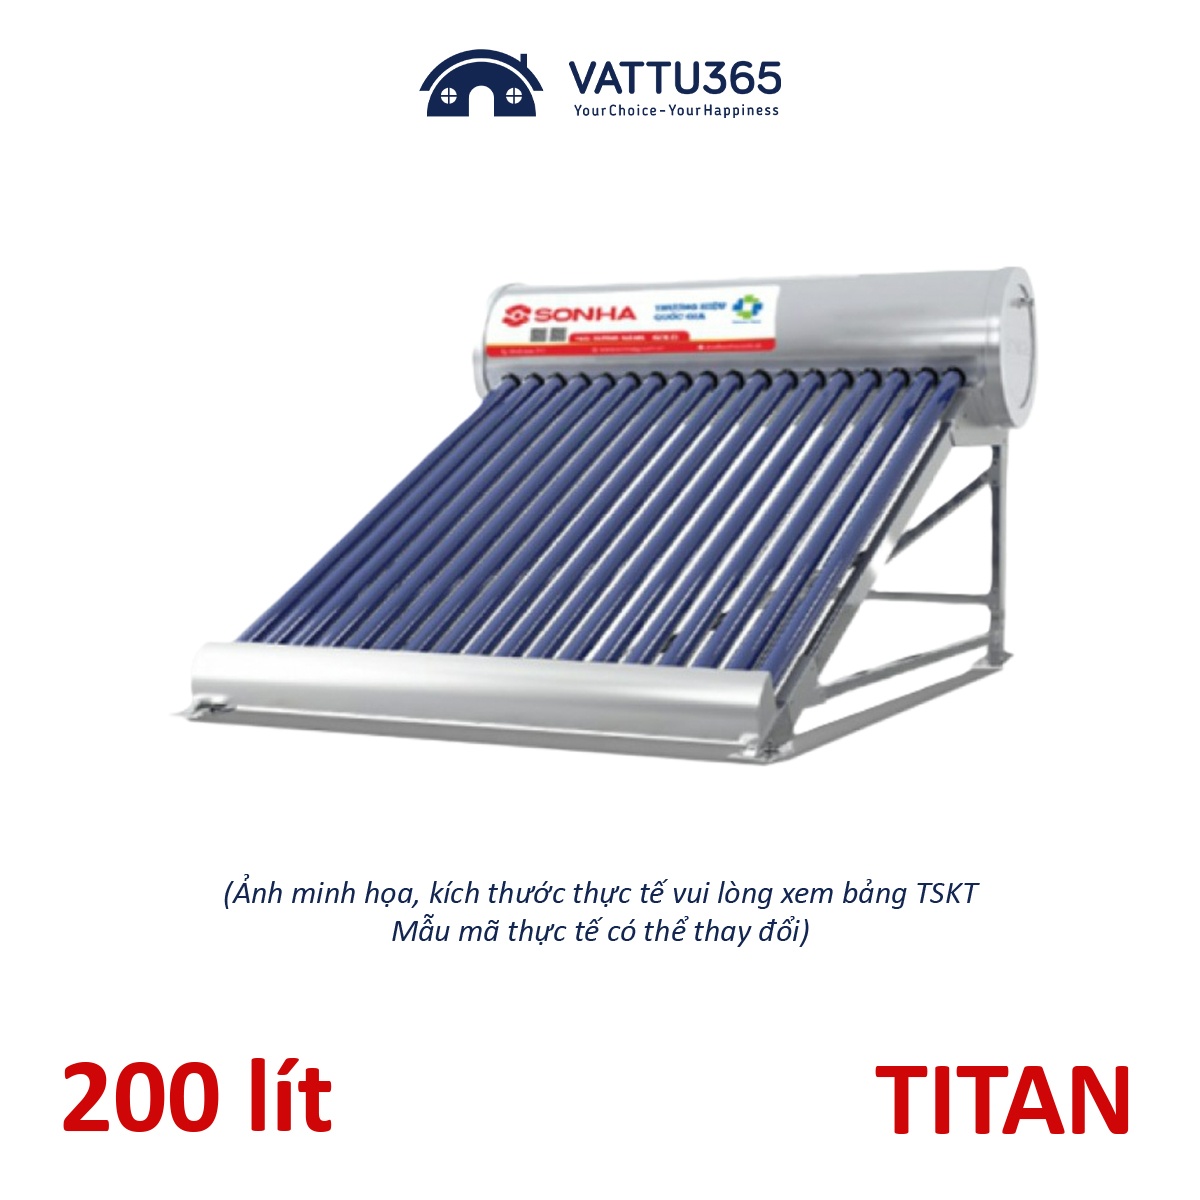 Máy nước nóng năng lượng mặt trời Sơn Hà TDN TITAN 200 Lít